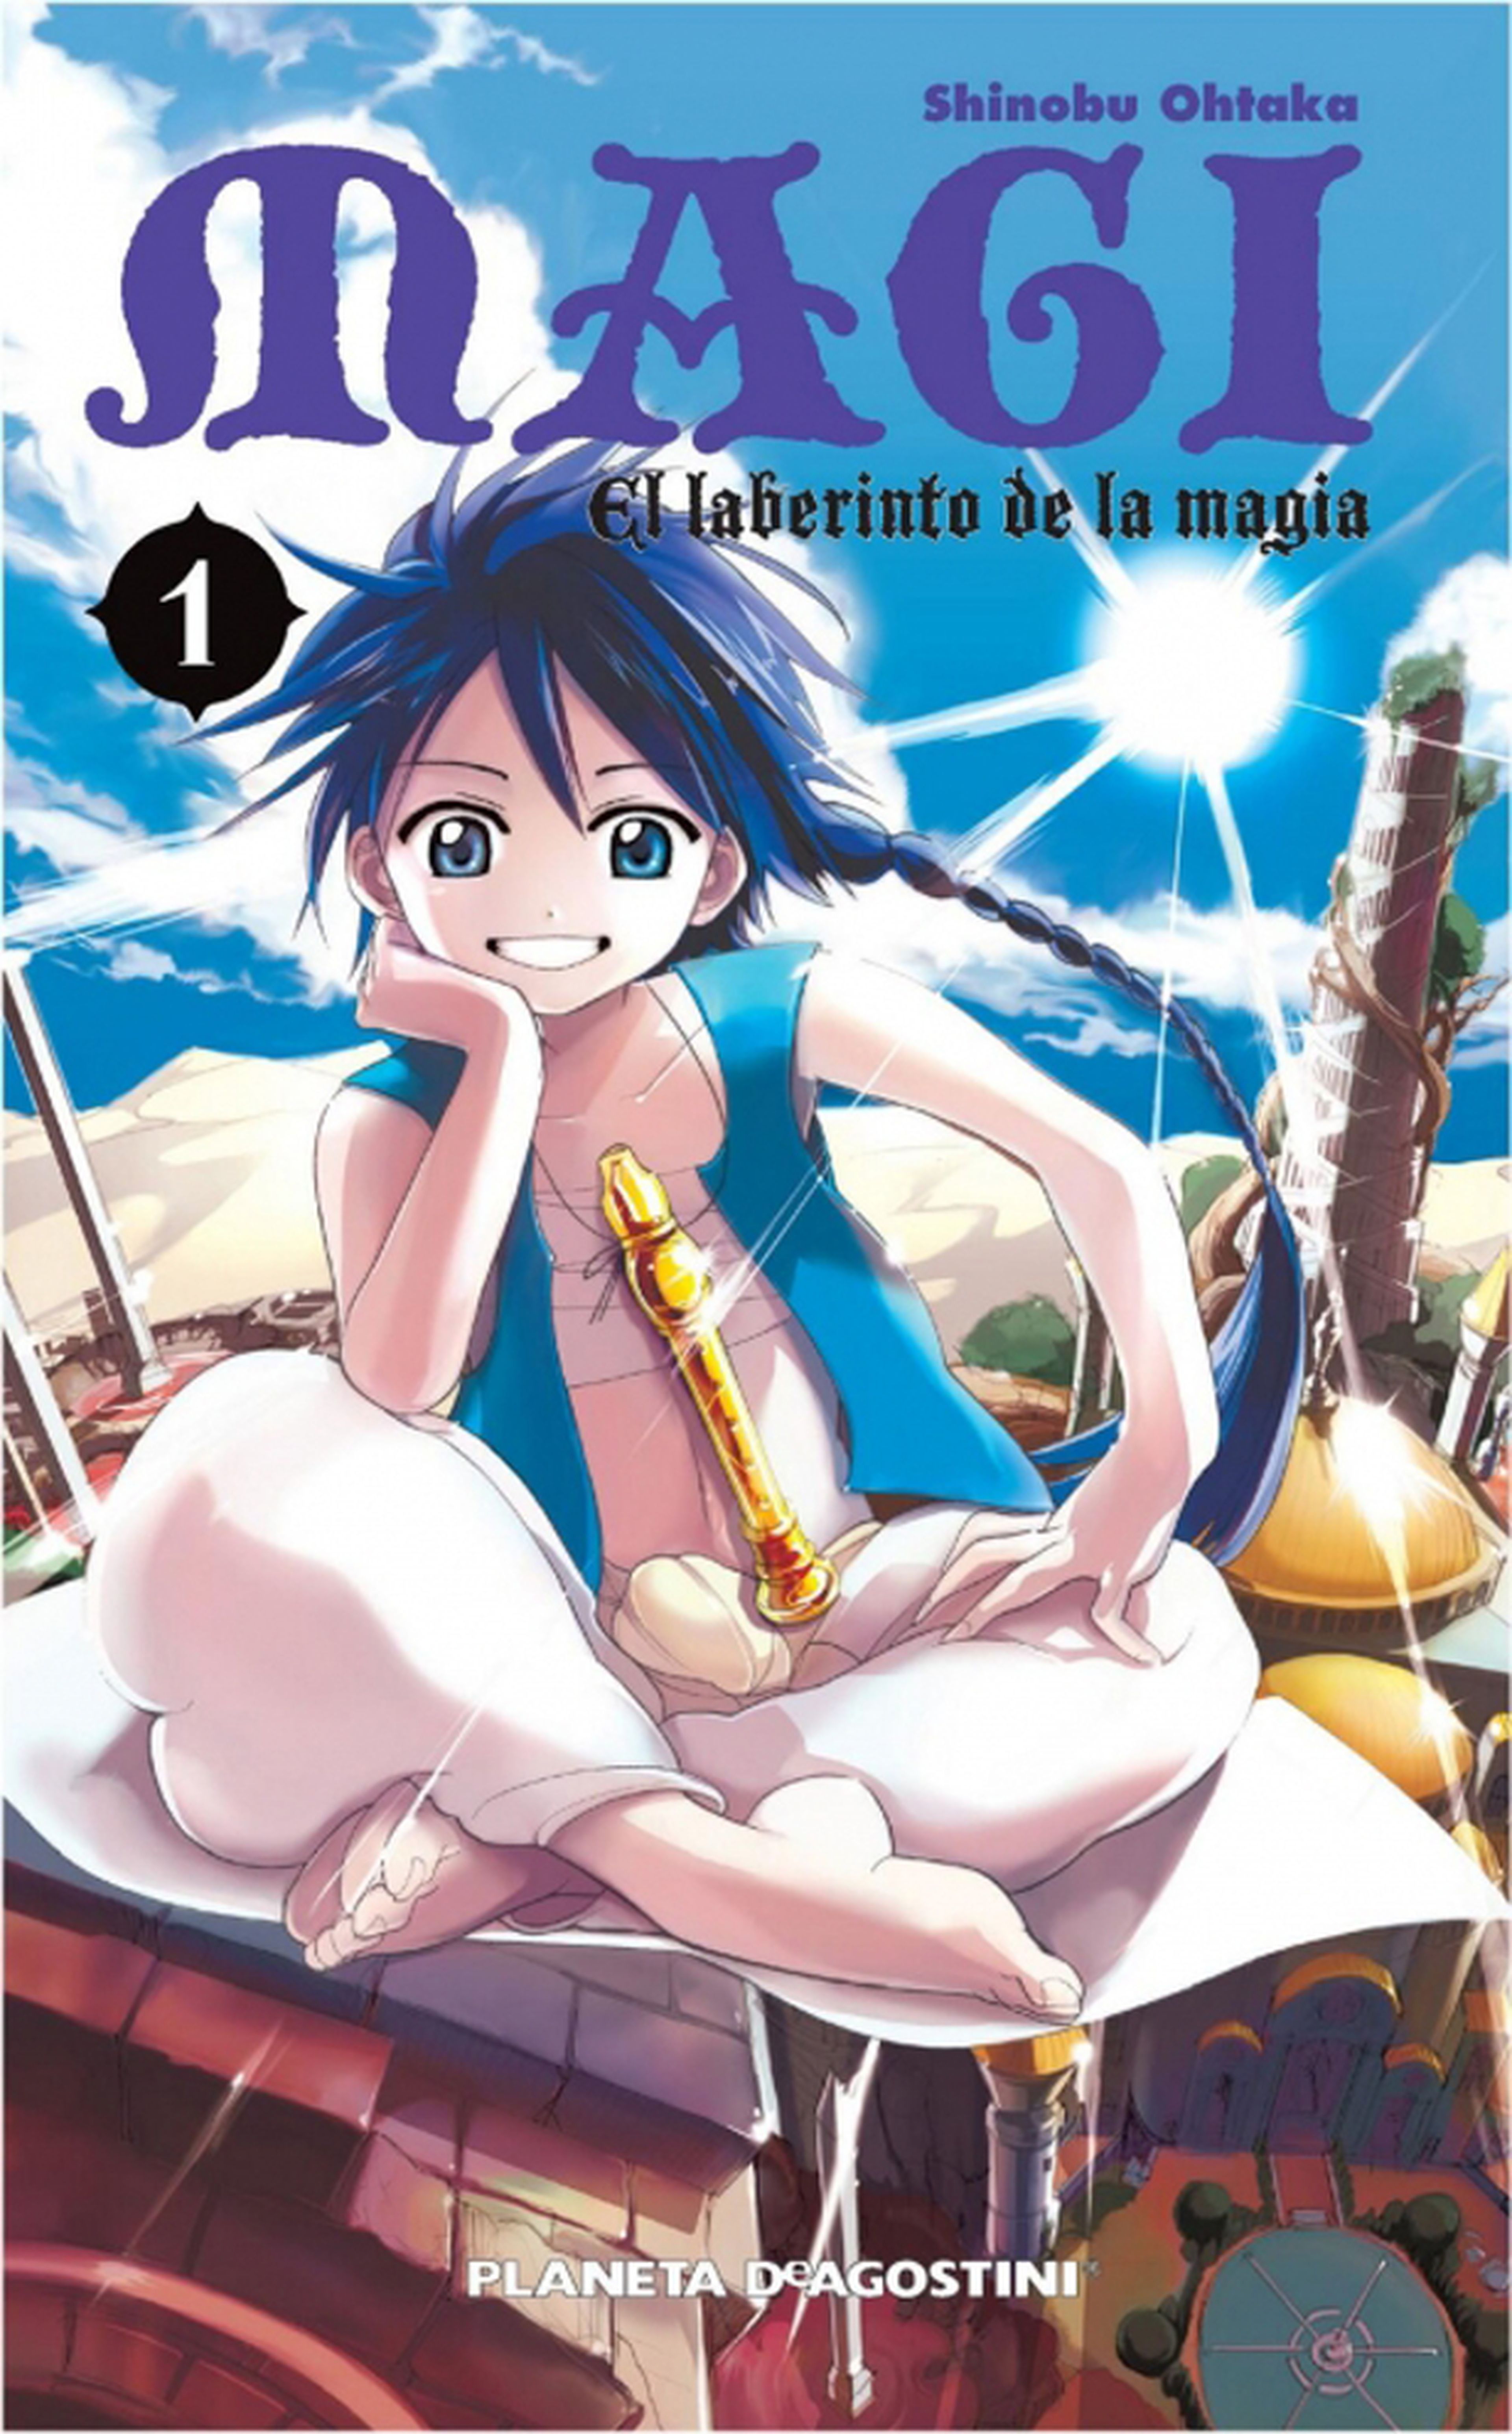 Mangas publicados en España que han empezado en 2013